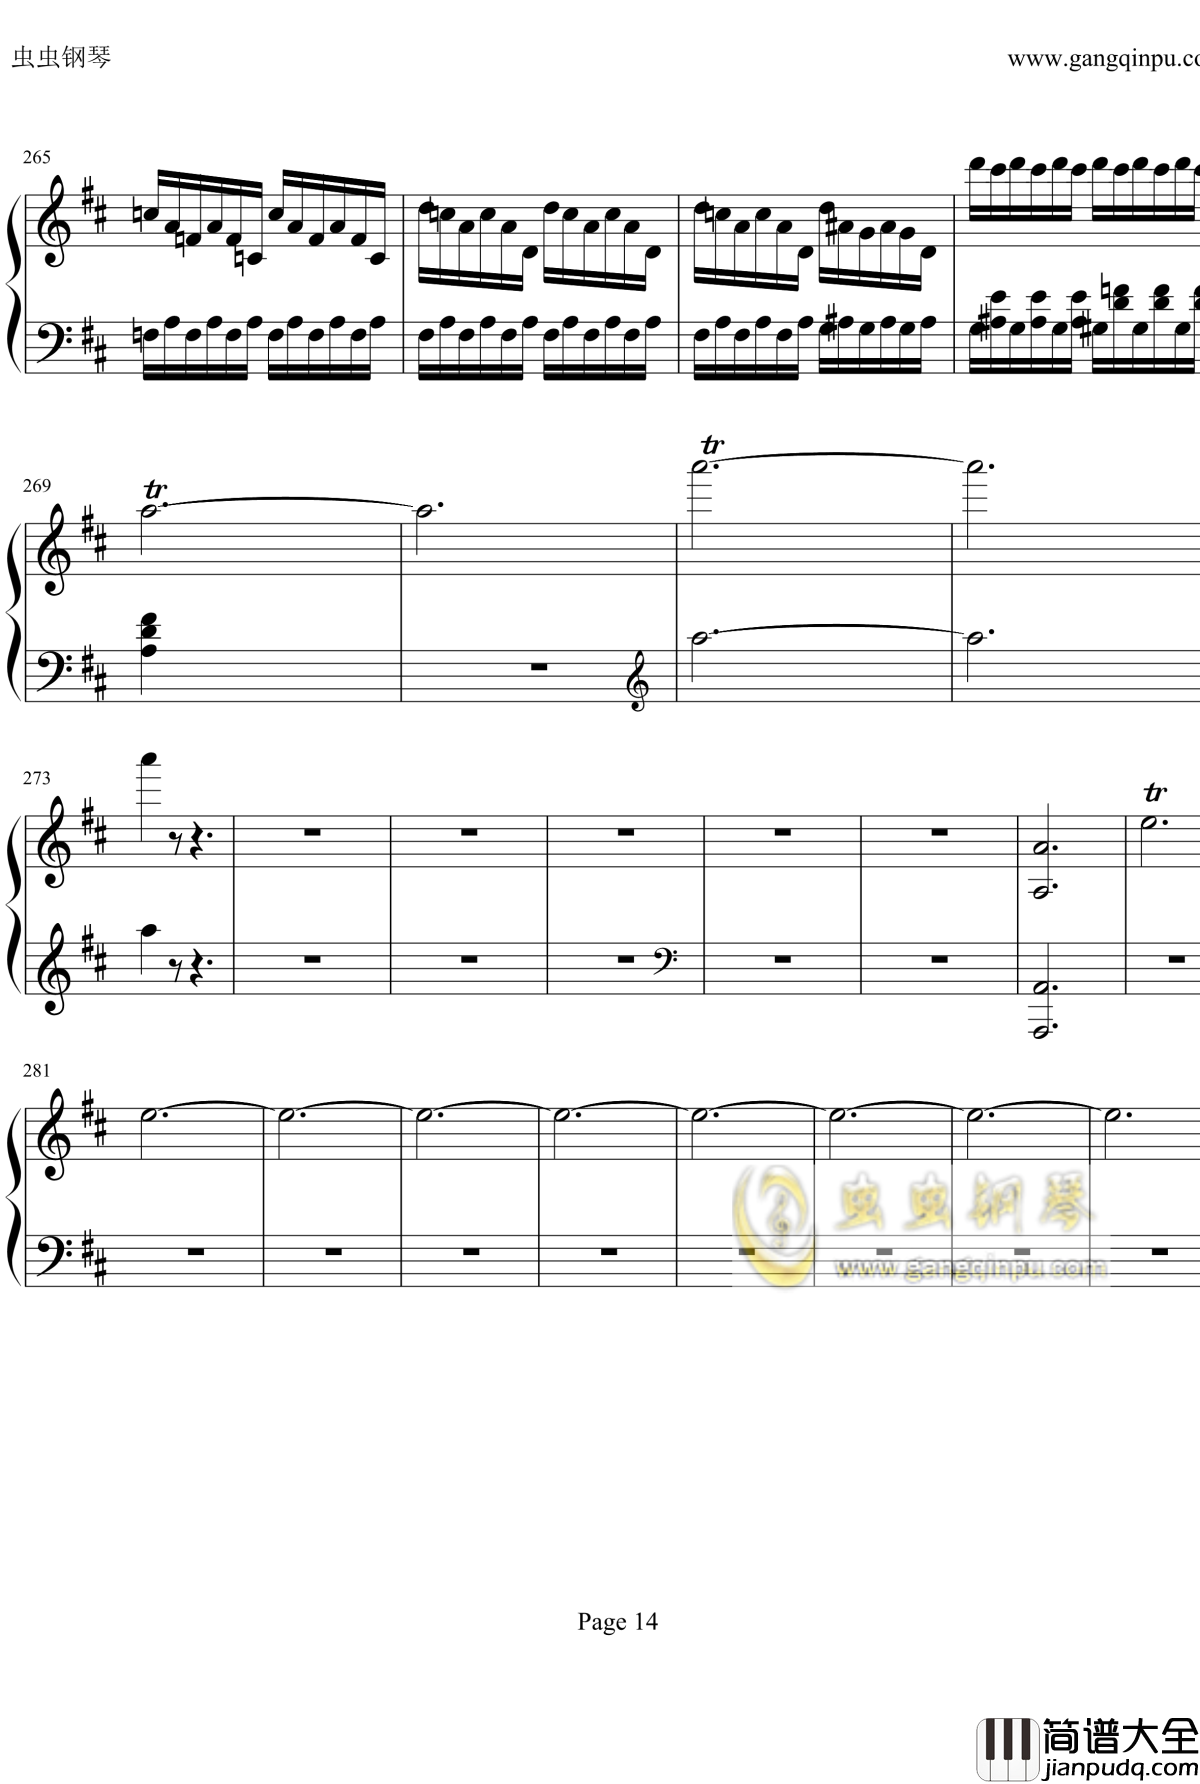 贝多芬钢琴协奏曲Op61第三乐章钢琴谱_贝多芬